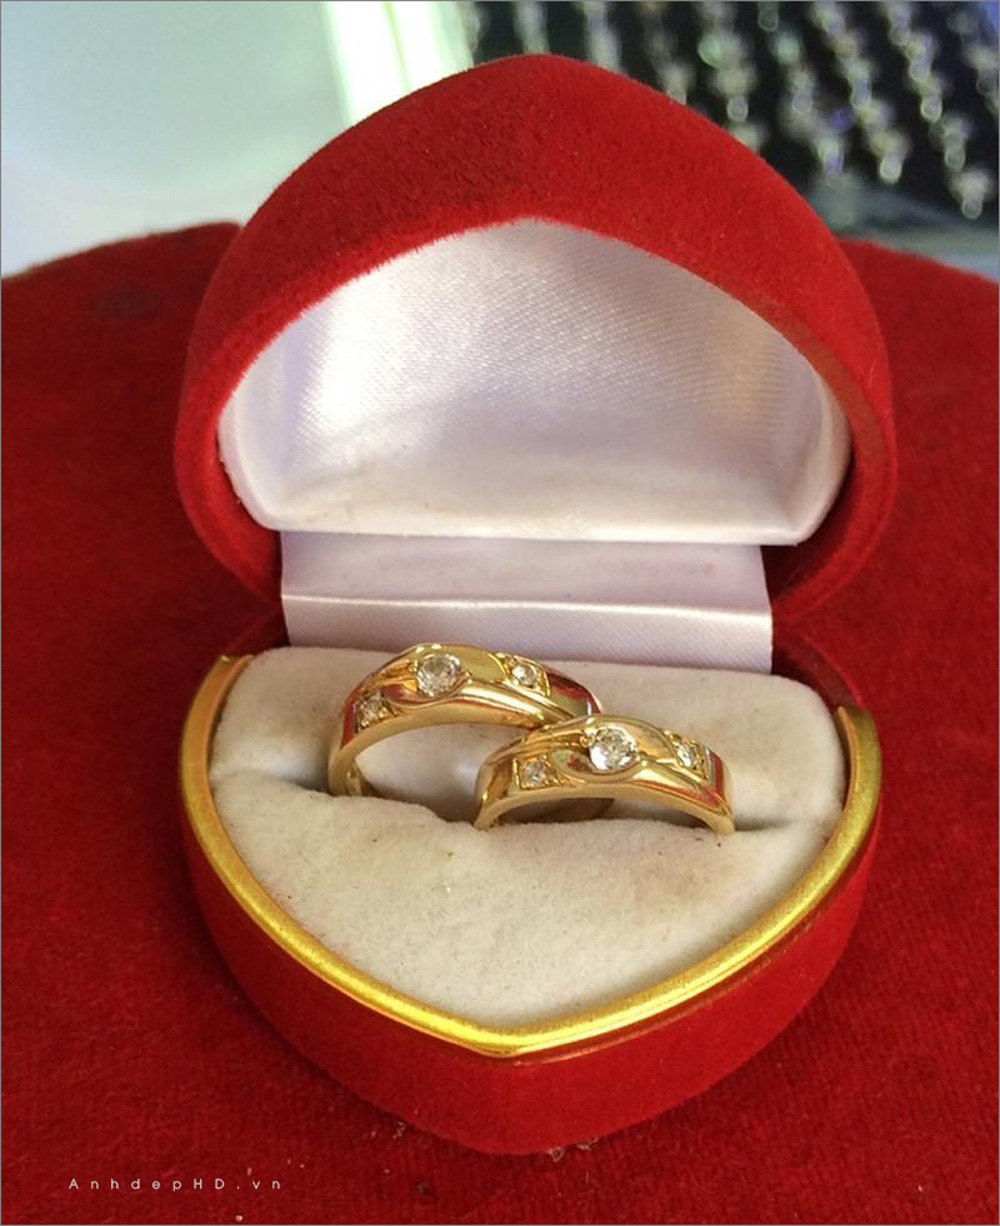 Cần bán] - Những mẫu nhẫn cưới trơn đẹp mê ly khiến các cặp đôi yêu thích |  Phuot.vn